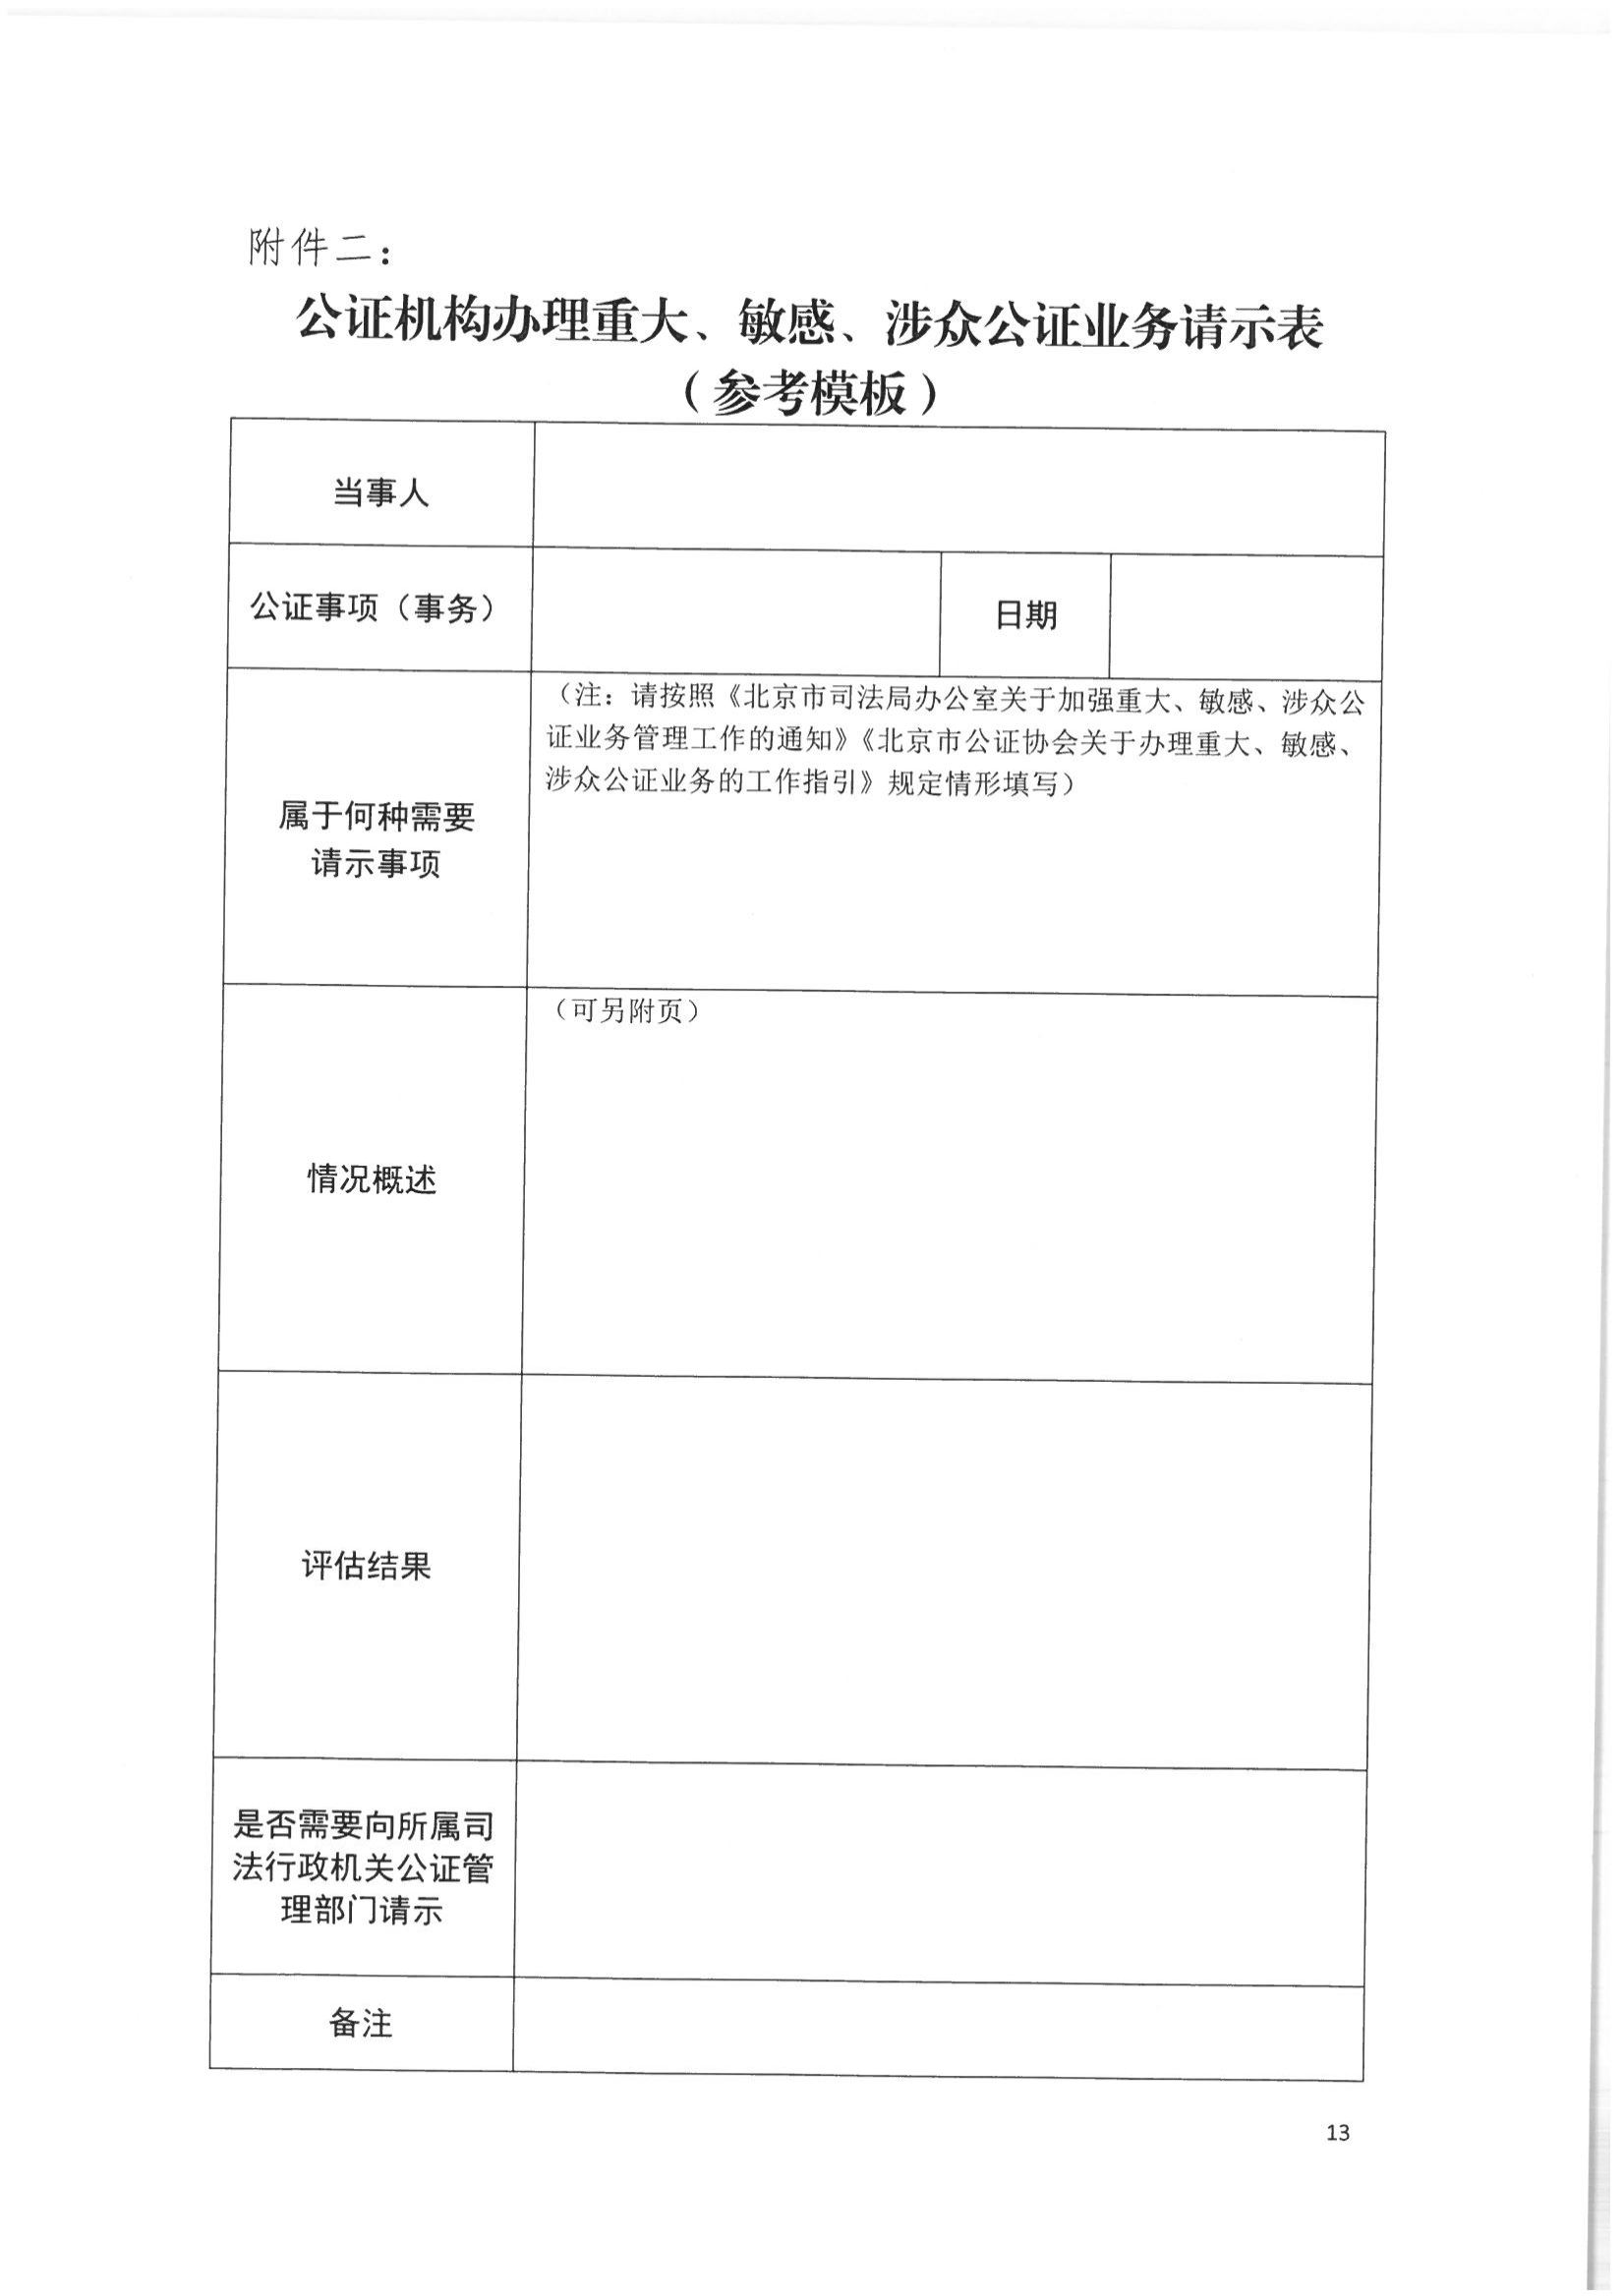 2北京市公证协会关于印发《北京市公证协会关于办理重大、敏感、涉众公证业务的工作指引》的通知(1)_12